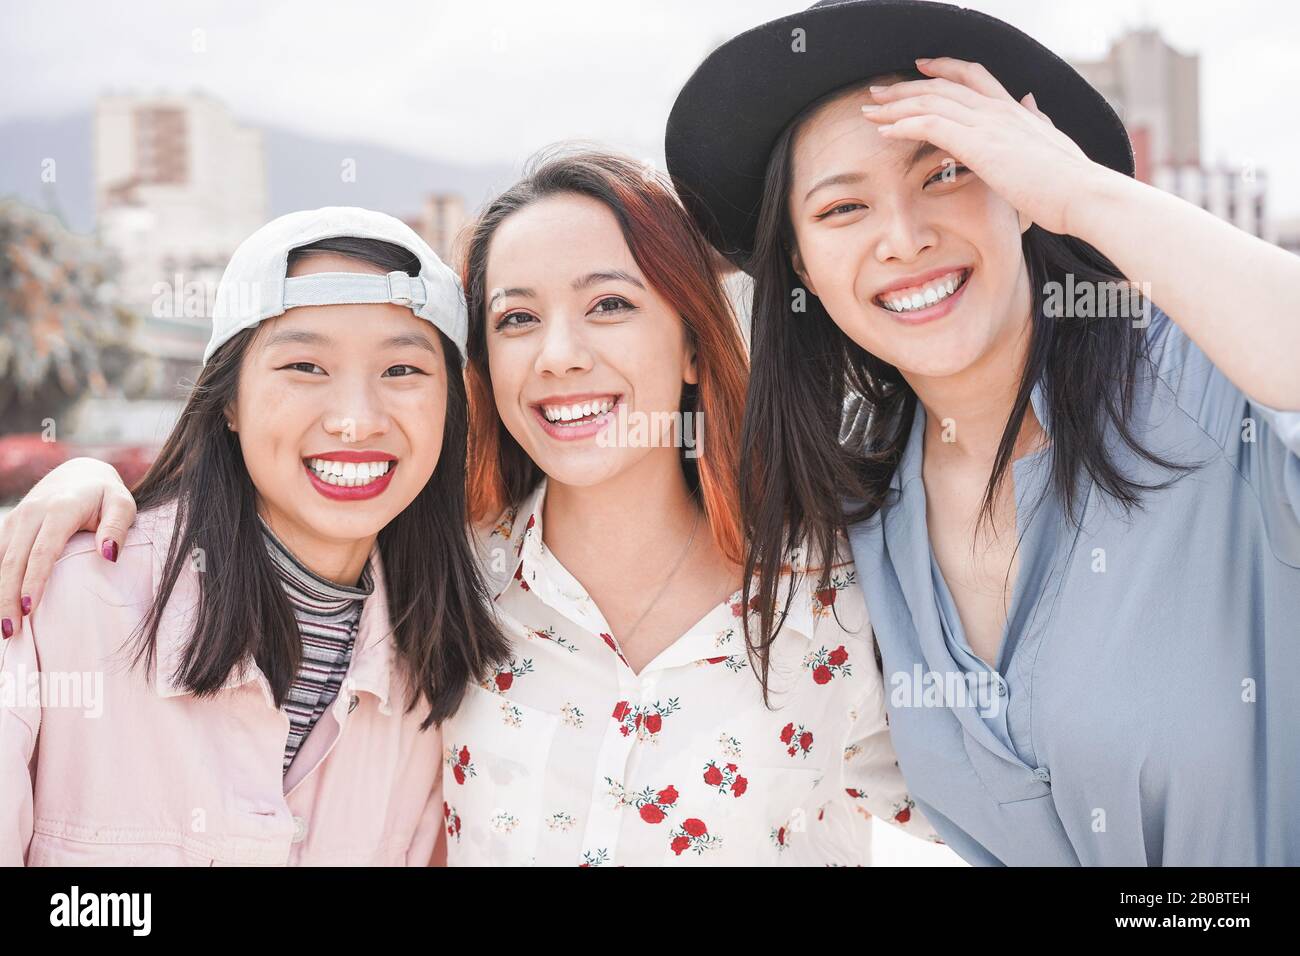 Asiatische Frauen haben Spaß im Freien - Fröhliche trendige Mädchen lachen zusammen - Millennial-Generation, Bonding, Freundschaft und Sammelkonzept - Foc Stockfoto